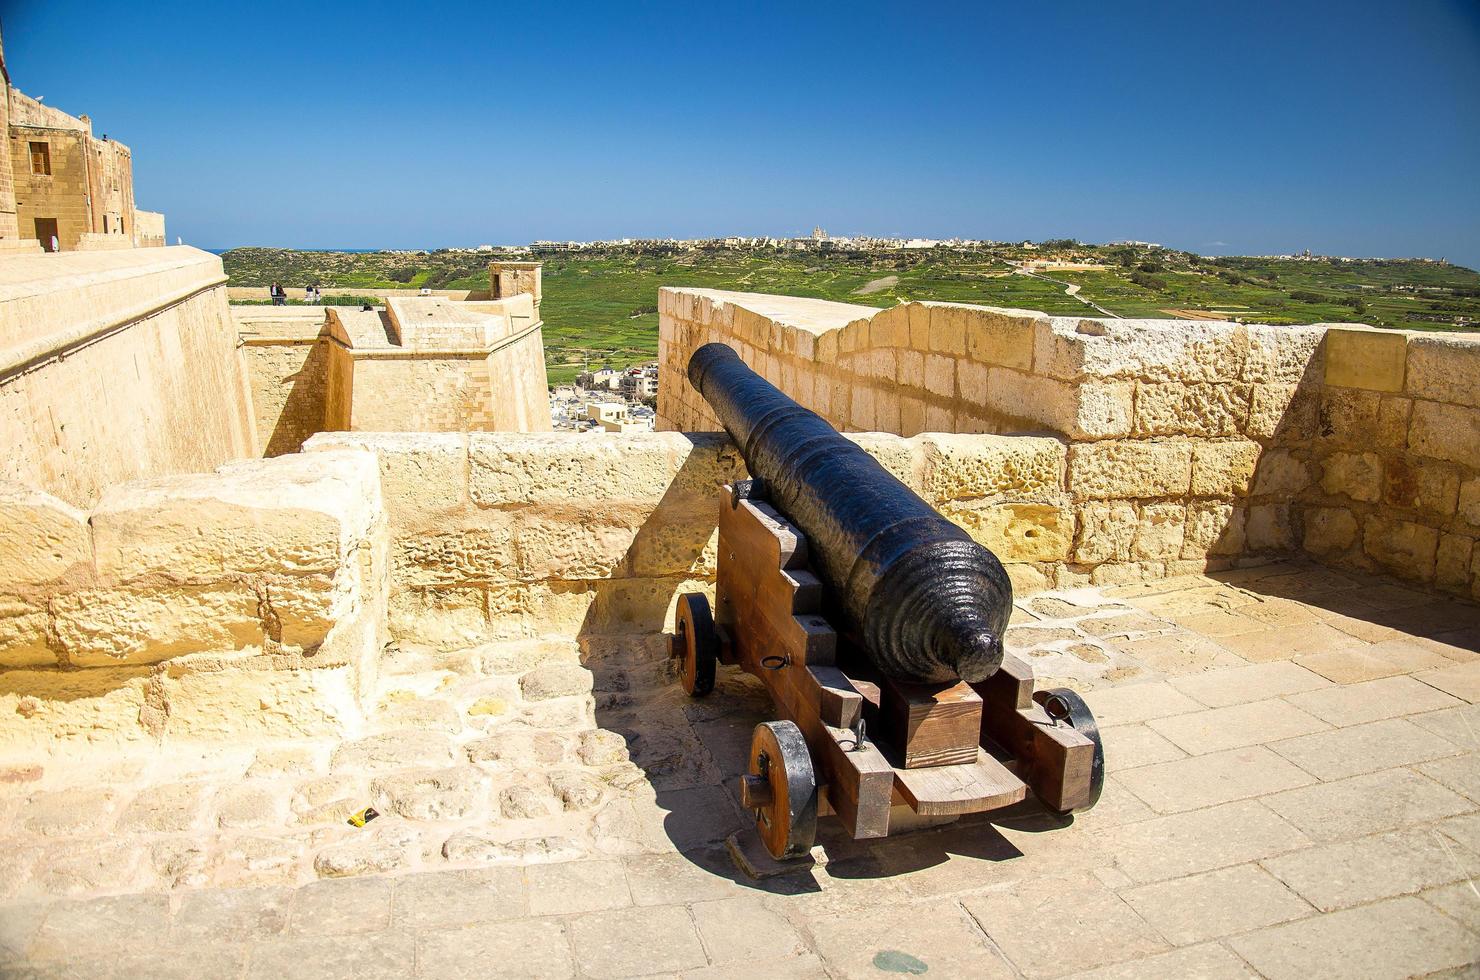 ön gozo, malta - 12 mars 2017 kanon på väggarna i det gamla medeltida slottet i cittadella torn, även känt som citadellet, castello i staden victoria rabat foto